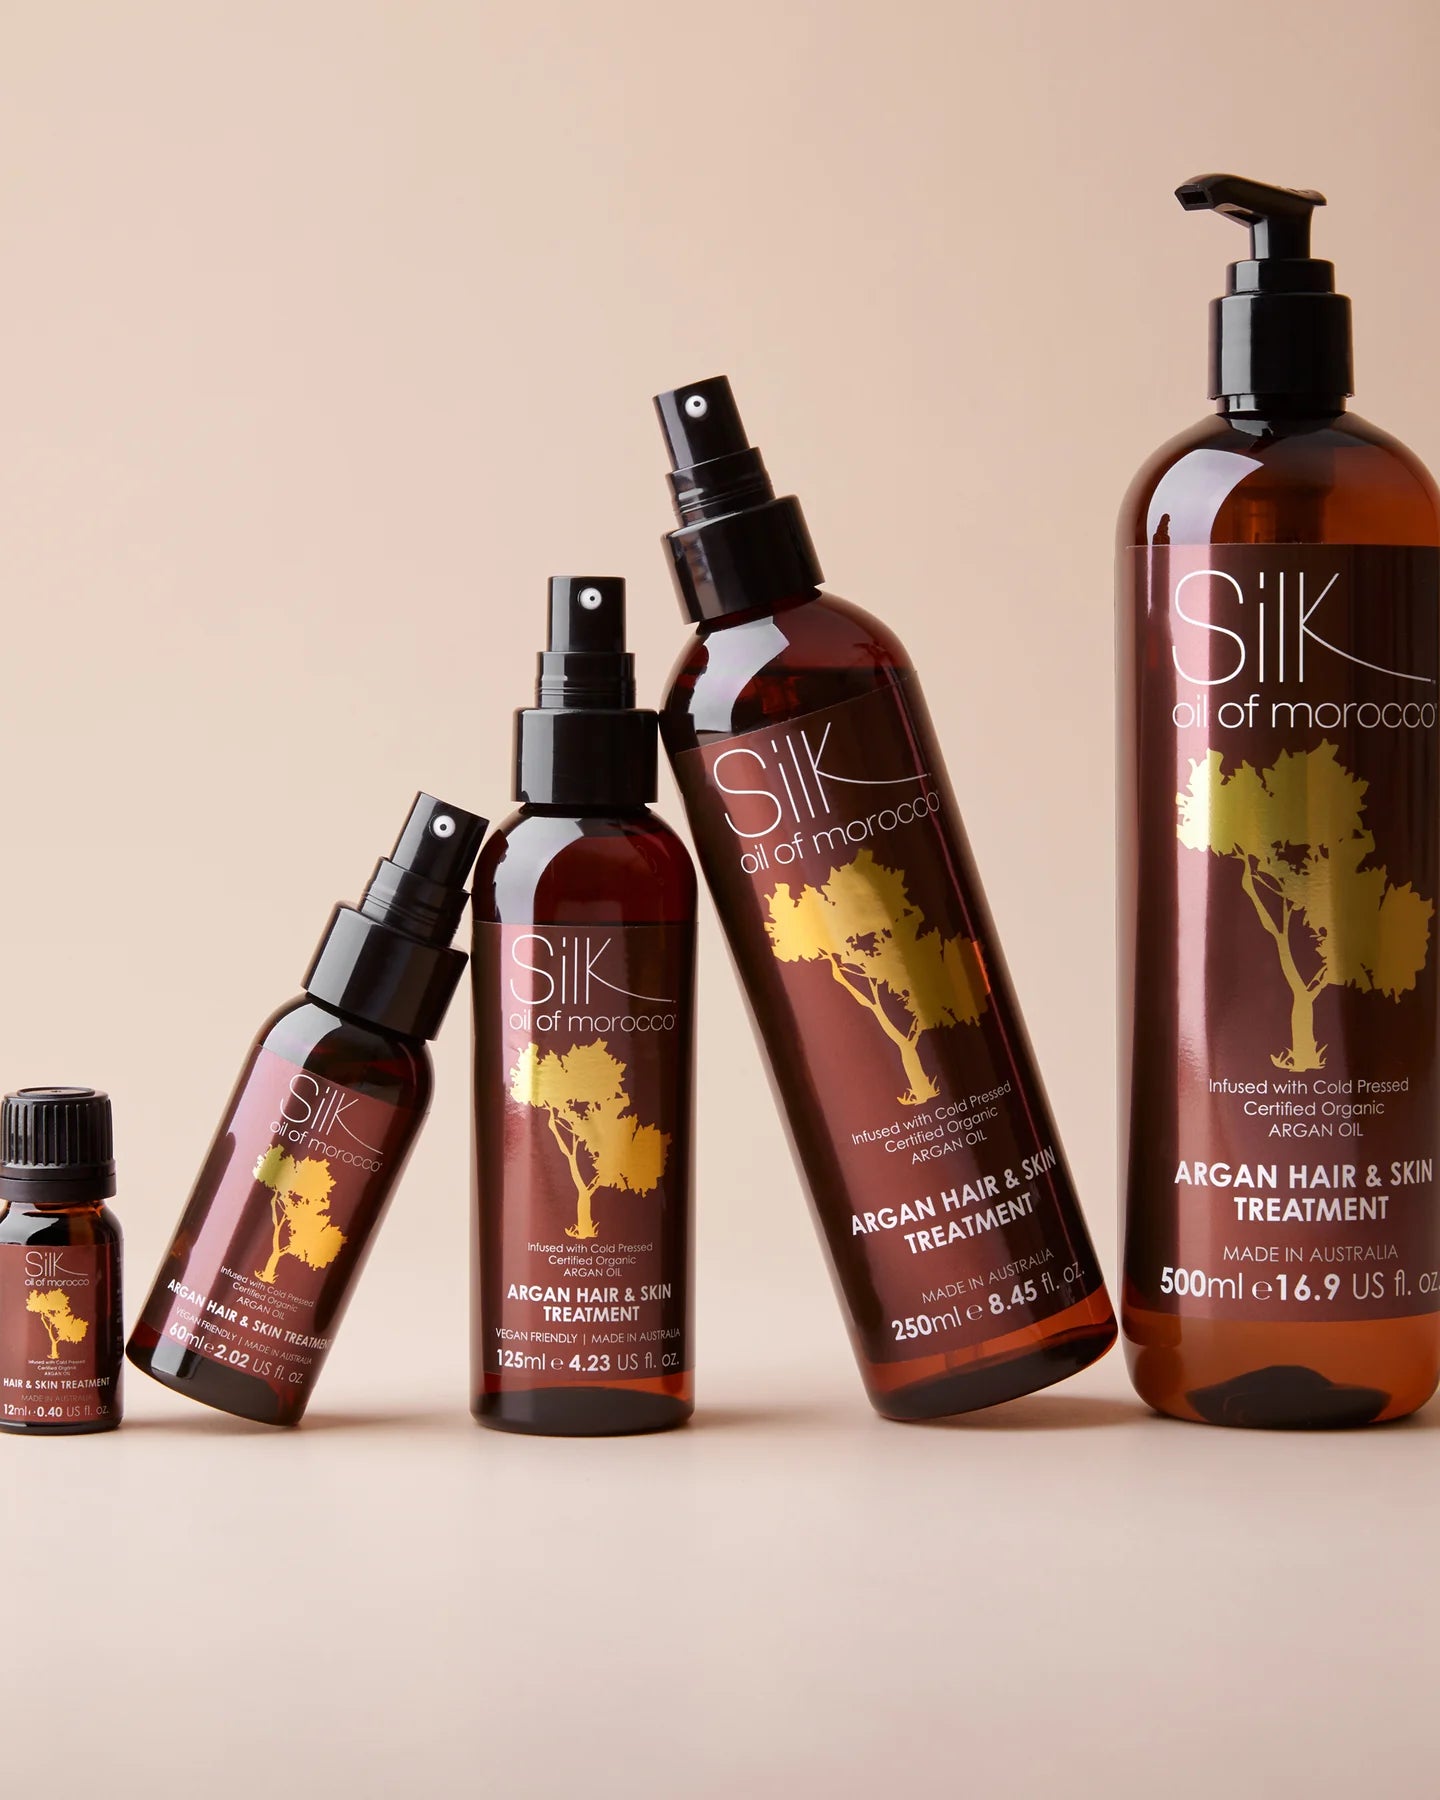 Silk Oil of Morocco Argan Hair & Skin Treatment 500ml Duo